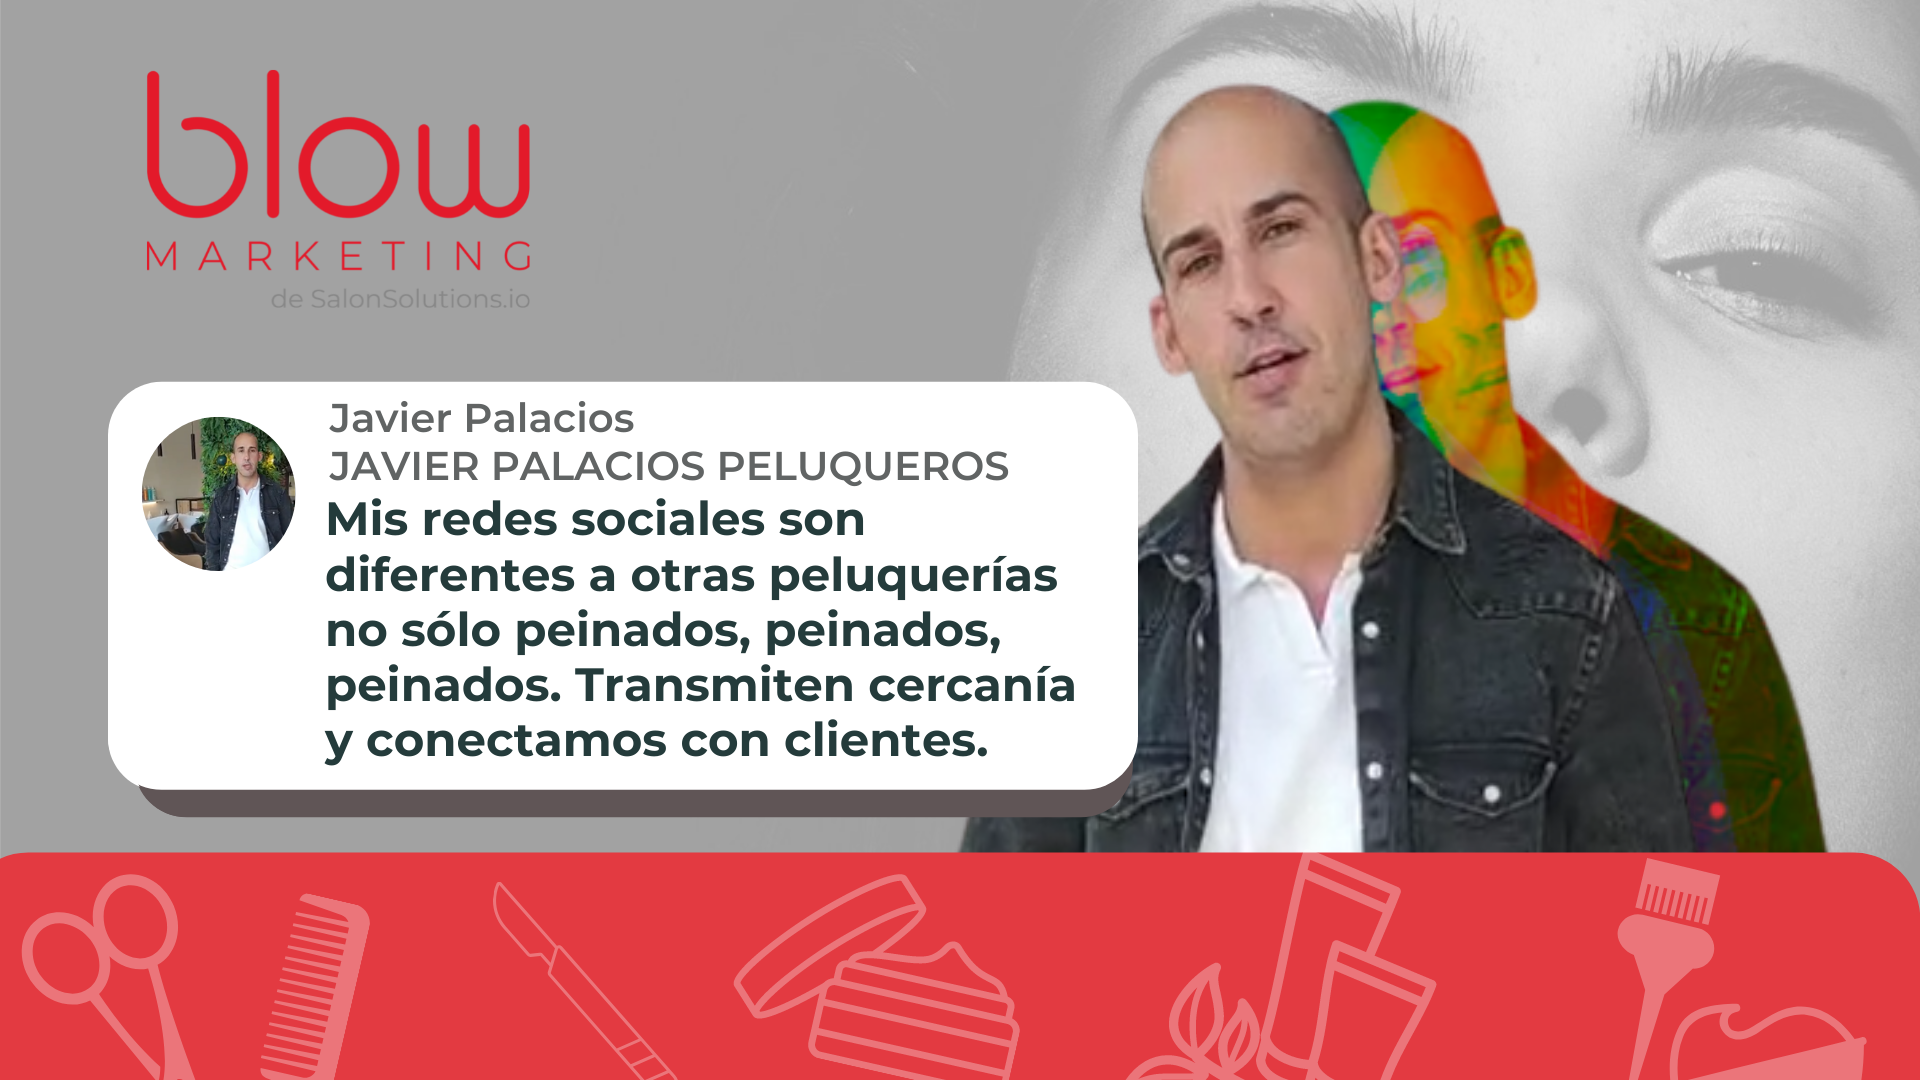 Haz clic para reproducir el video testimonio de Javier Palacios Peluqueros